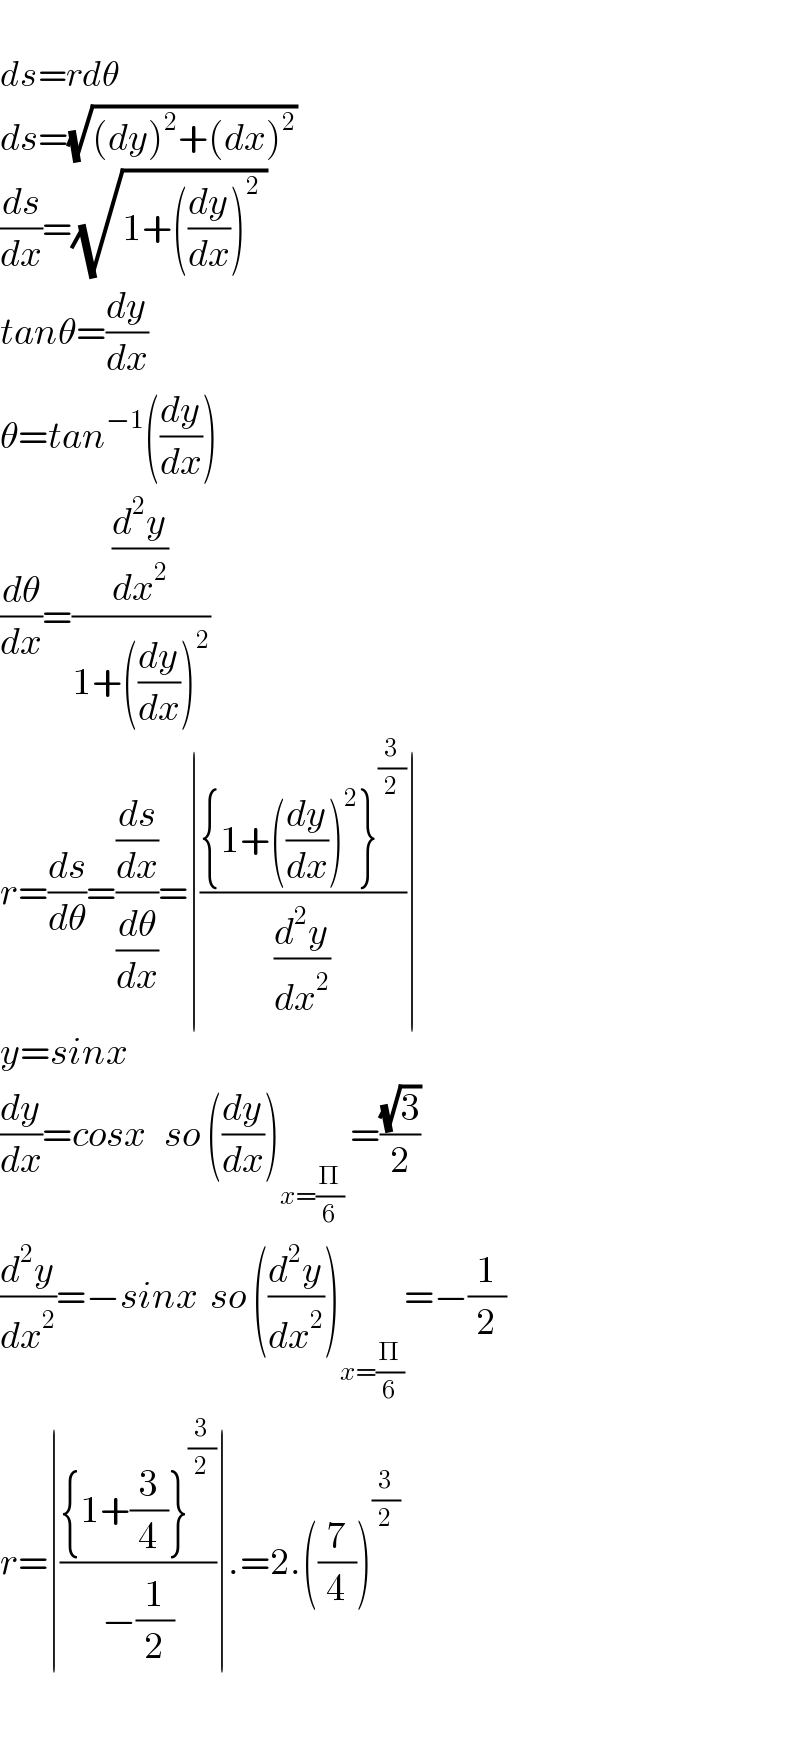   ds=rdθ  ds=(√((dy)^2 +(dx)^2 ))   (ds/dx)=(√(1+((dy/dx))^2  ))  tanθ=(dy/dx)  θ=tan^(−1) ((dy/dx))  (dθ/dx)=((d^2 y/dx^2 )/(1+((dy/dx))^2 ))  r=(ds/dθ)=((ds/dx)/(dθ/dx))=∣(({1+((dy/dx))^2 }^(3/2) )/(d^2 y/dx^2 ))∣  y=sinx  (dy/dx)=cosx   so ((dy/dx))_(x=(Π/6))  =((√3)/2)  (d^2 y/dx^2 )=−sinx  so ((d^2 y/dx^2 ))_(x=(Π/6)) =−(1/2)  r=∣(({1+(3/4)}^(3/2) )/(−(1/2)))∣.=2.((7/4))^(3/2)     